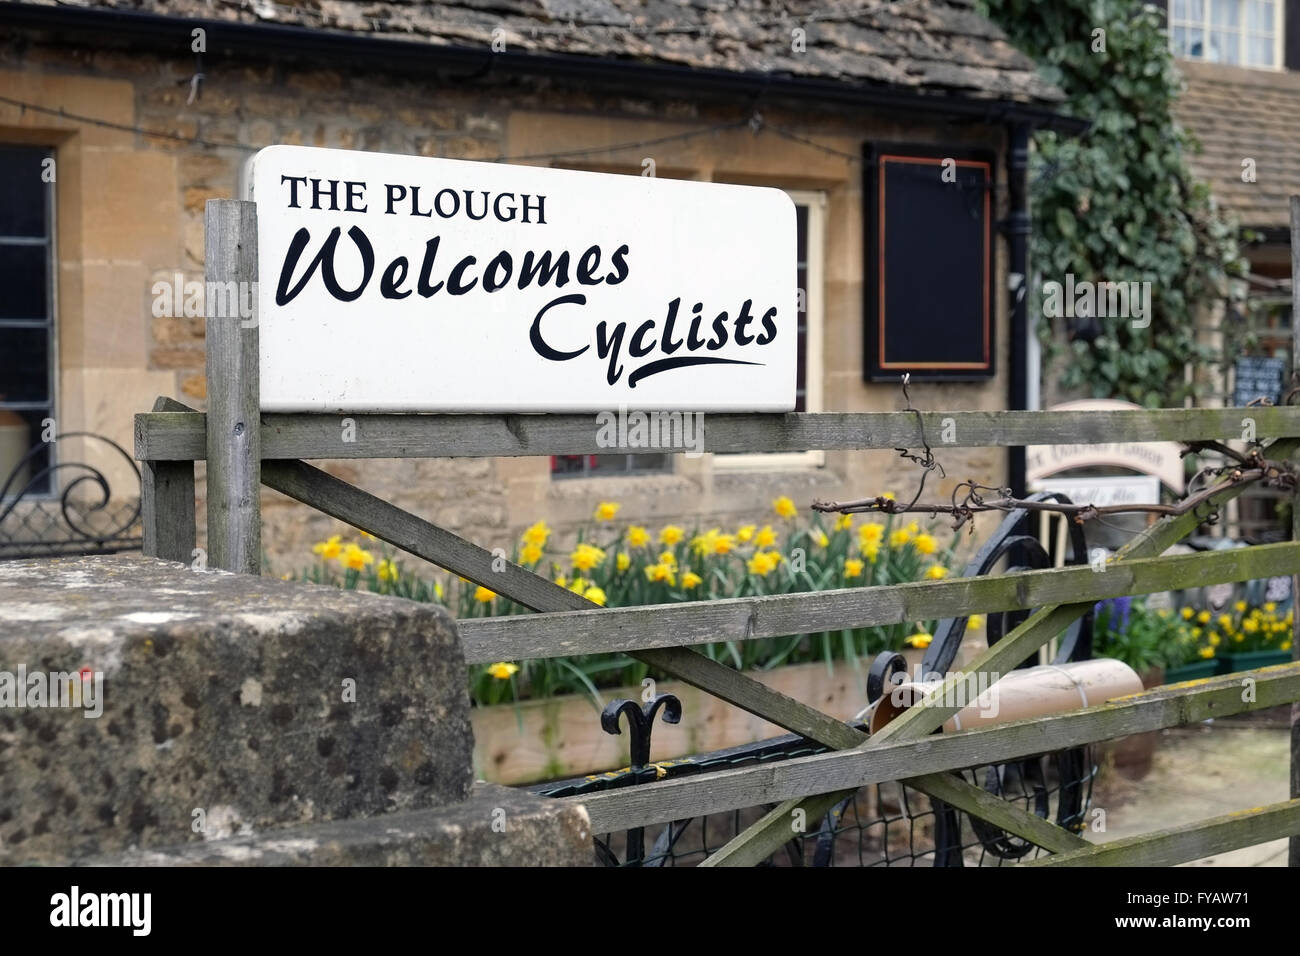 Bienvenue cycliste panneau au Plough Inn, Fairford, Gloucestershire, Angleterre, Royaume-Uni. Banque D'Images